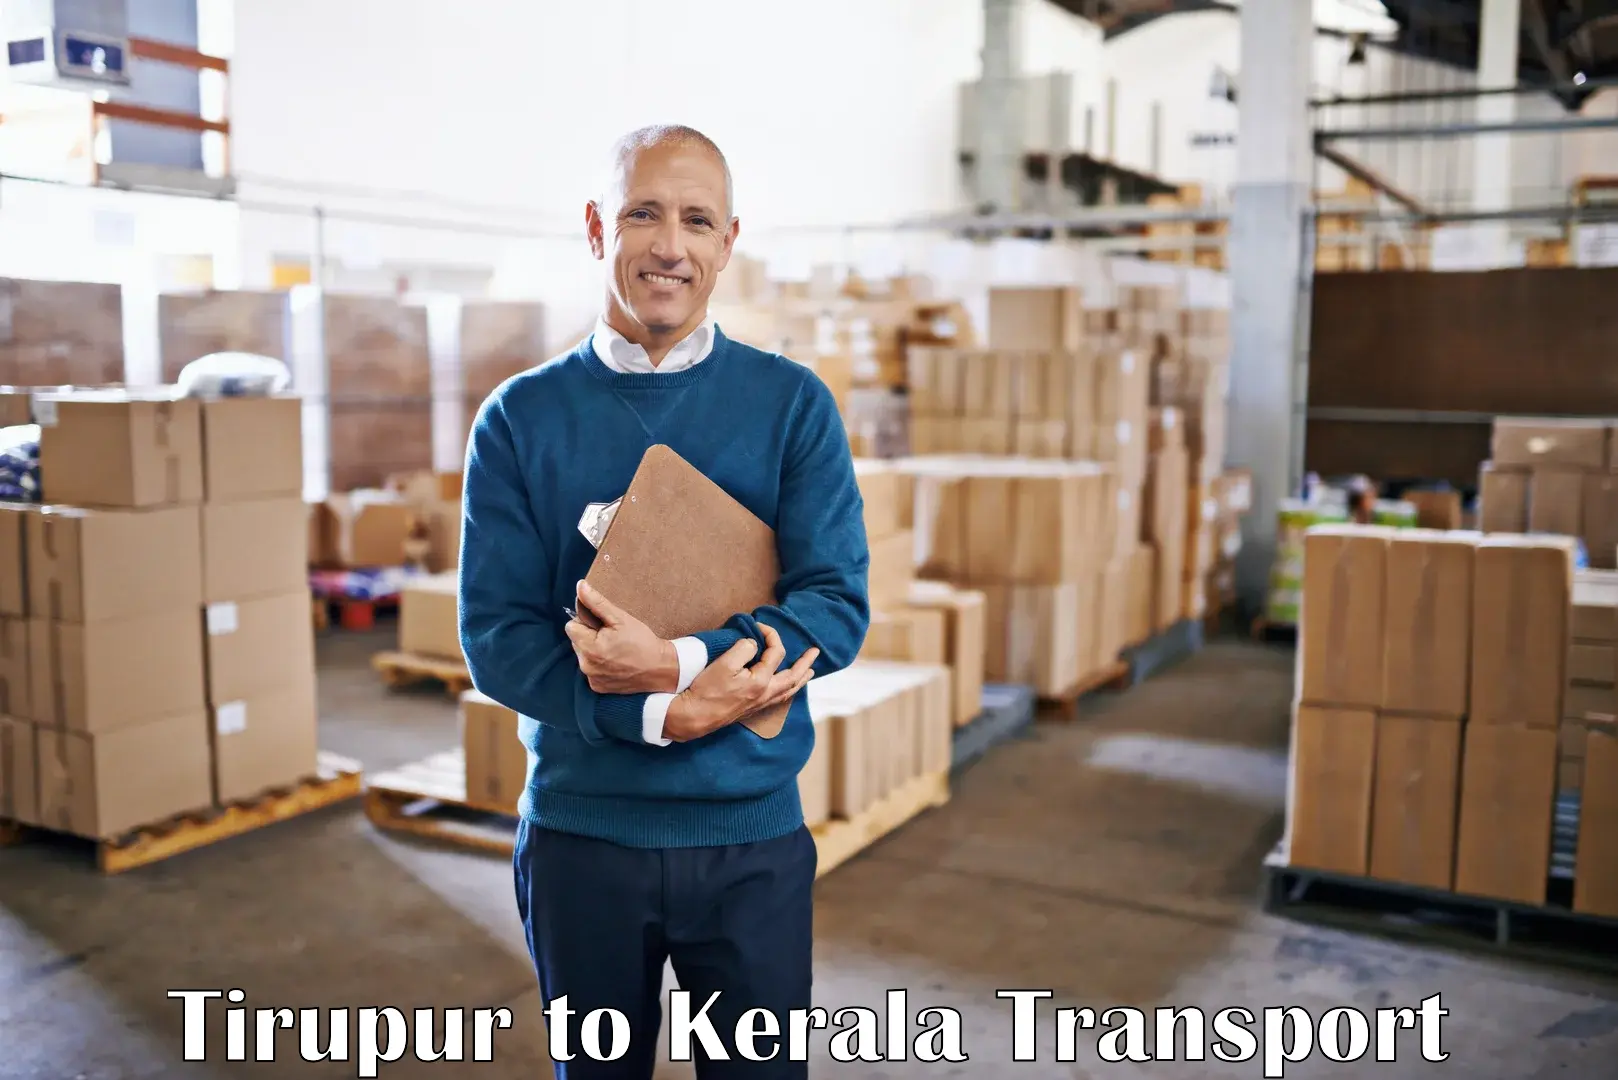 Express transport services Tirupur to Kerala